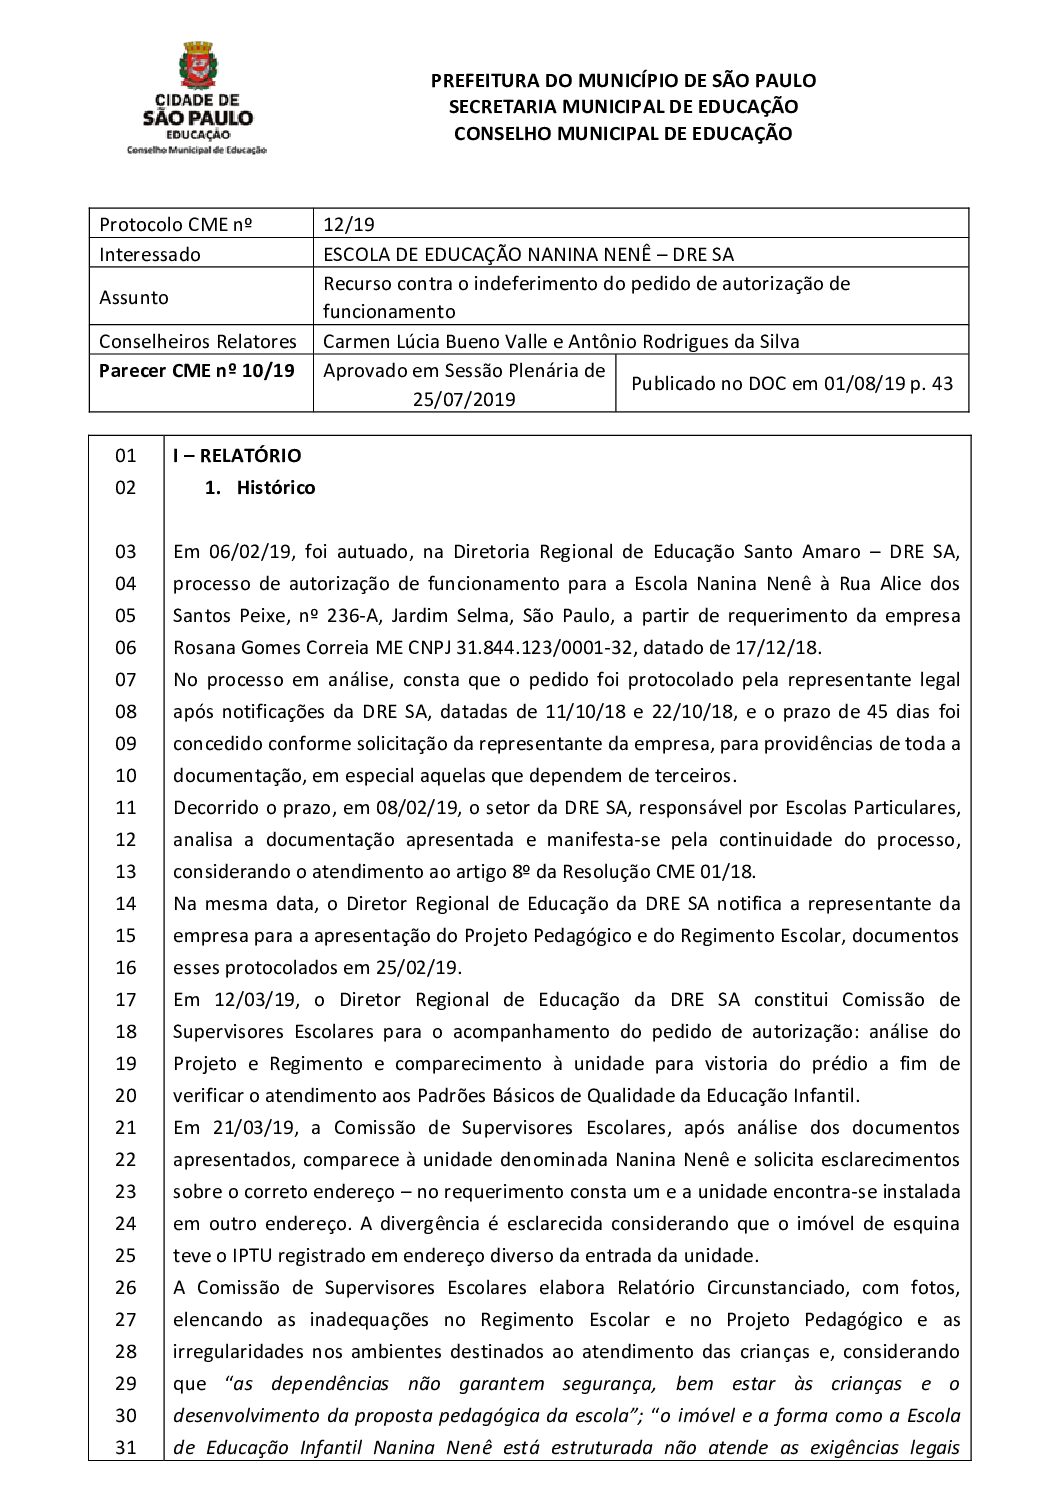 Parecer CME nº 10/2019 - Escola de Educação Nanina Nenê (DRE Santo Amaro) - Recurso contra o indeferimento do pedido de autorização de funcionamento